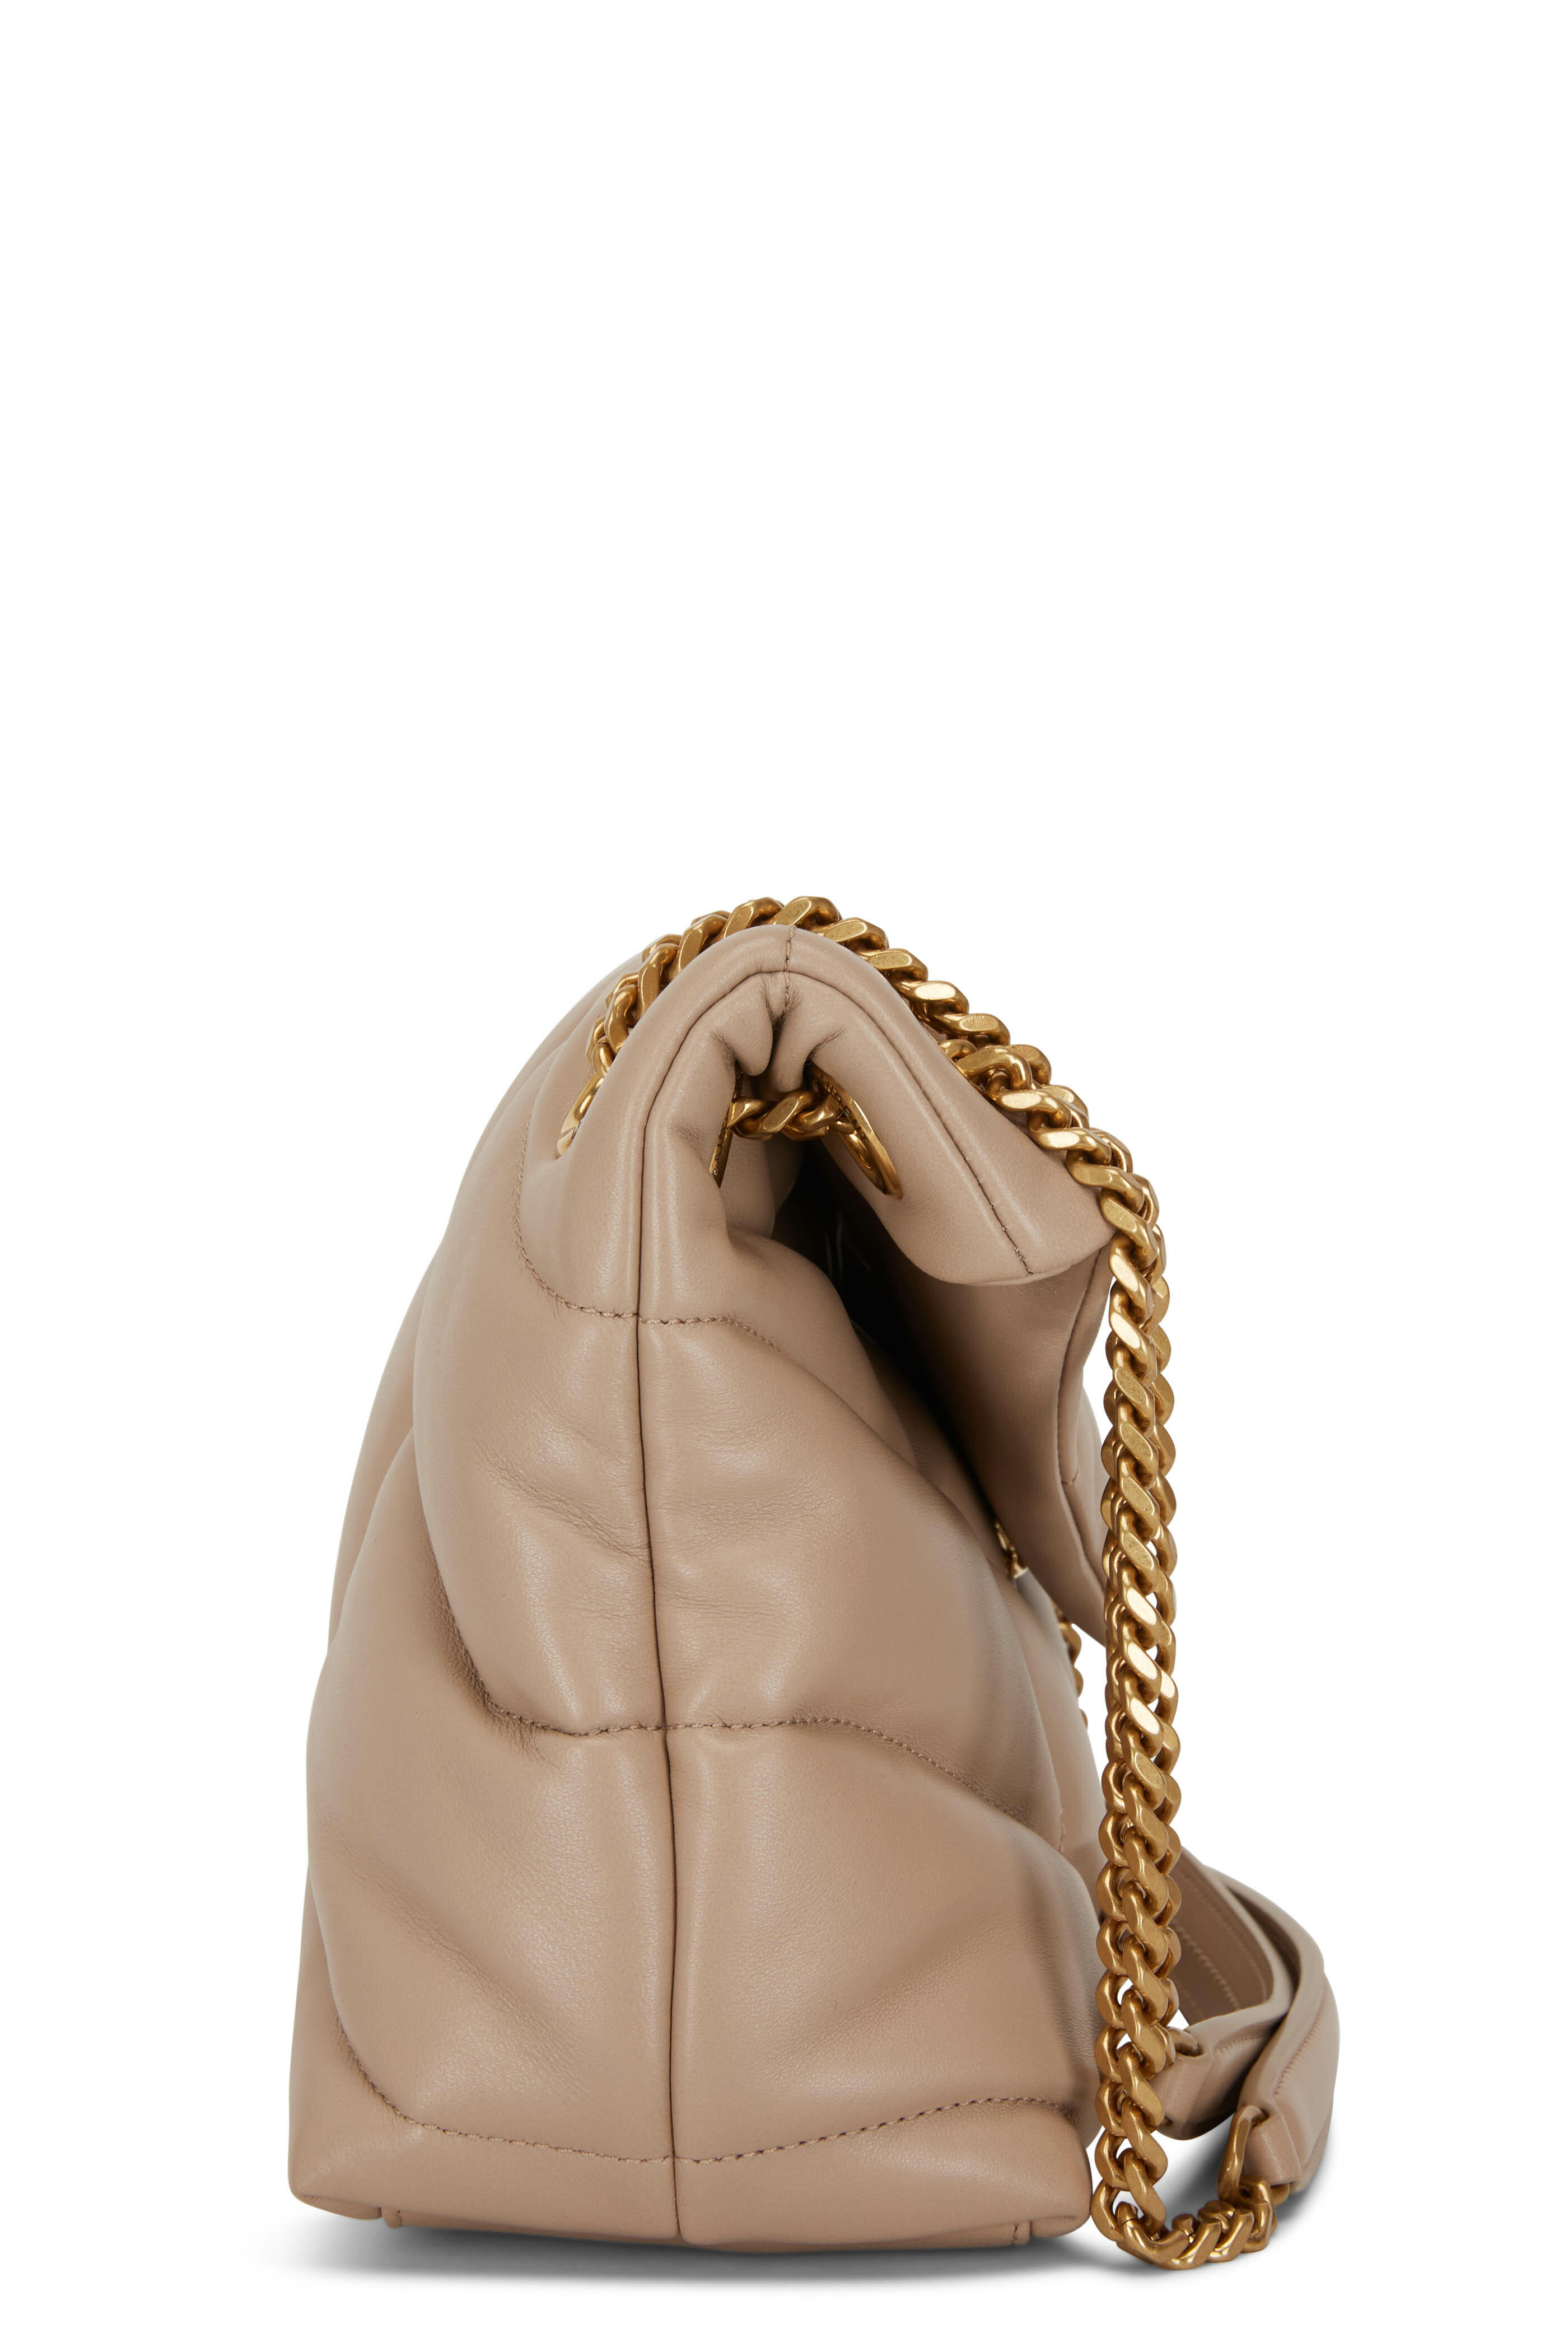 Saint Laurent Women's Loulou Matelassé Leather Shoulder Bag Dark Beige